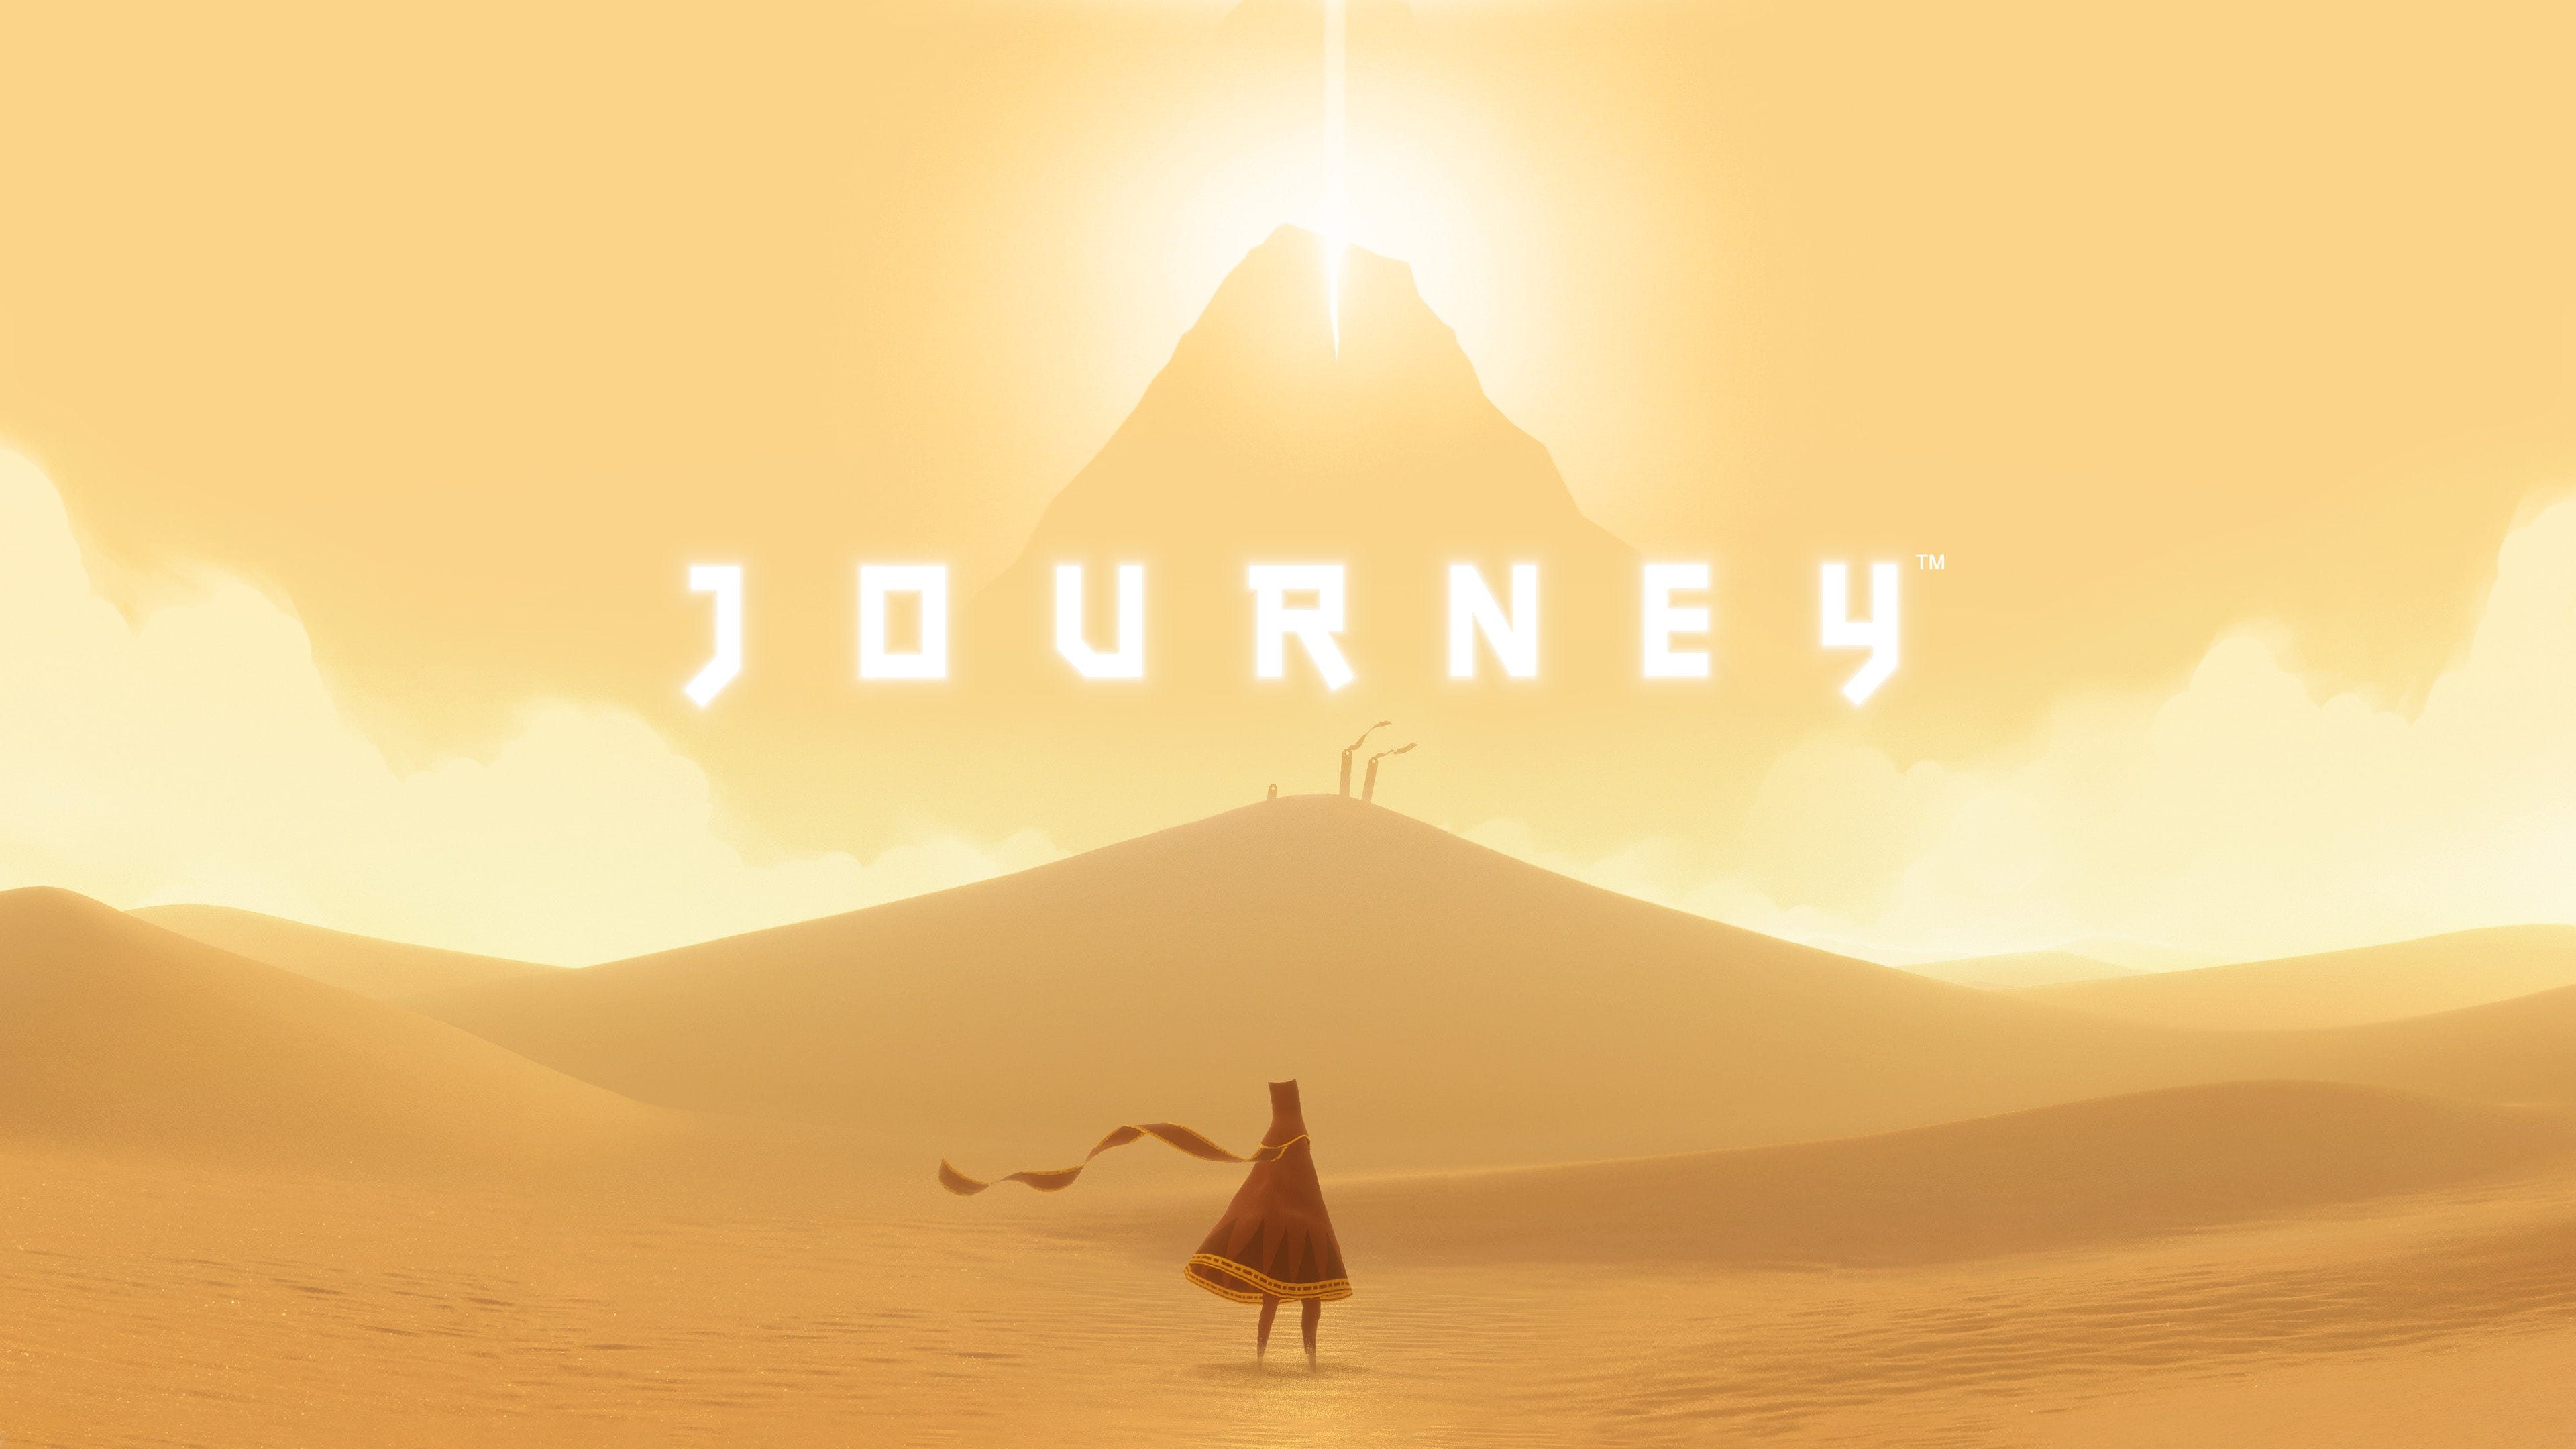 1.18 journey